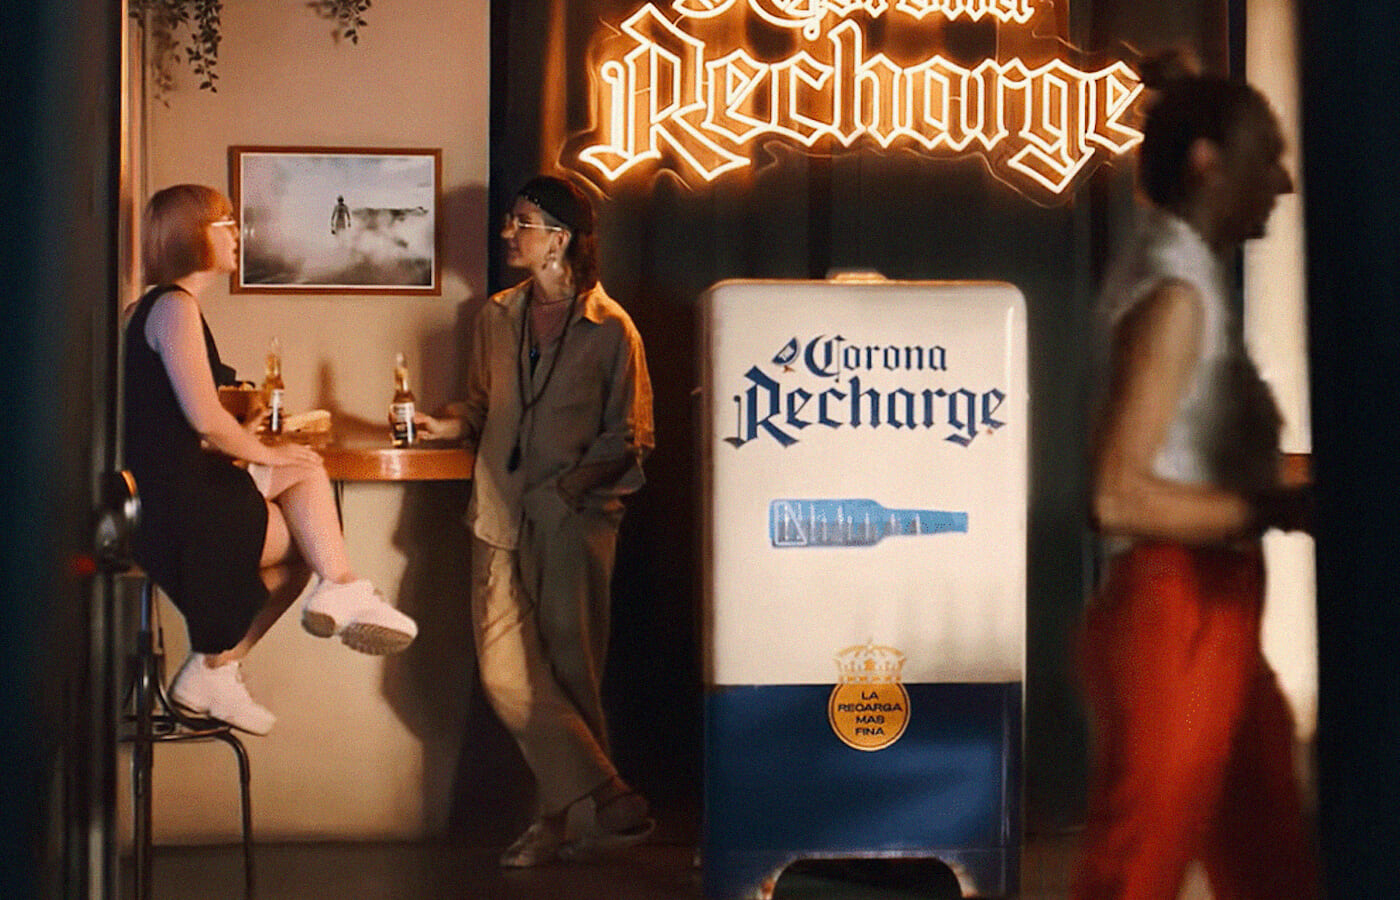 スマホの電池が切れそうな人だけにコロナビールをサービスする「Corona Recharge」